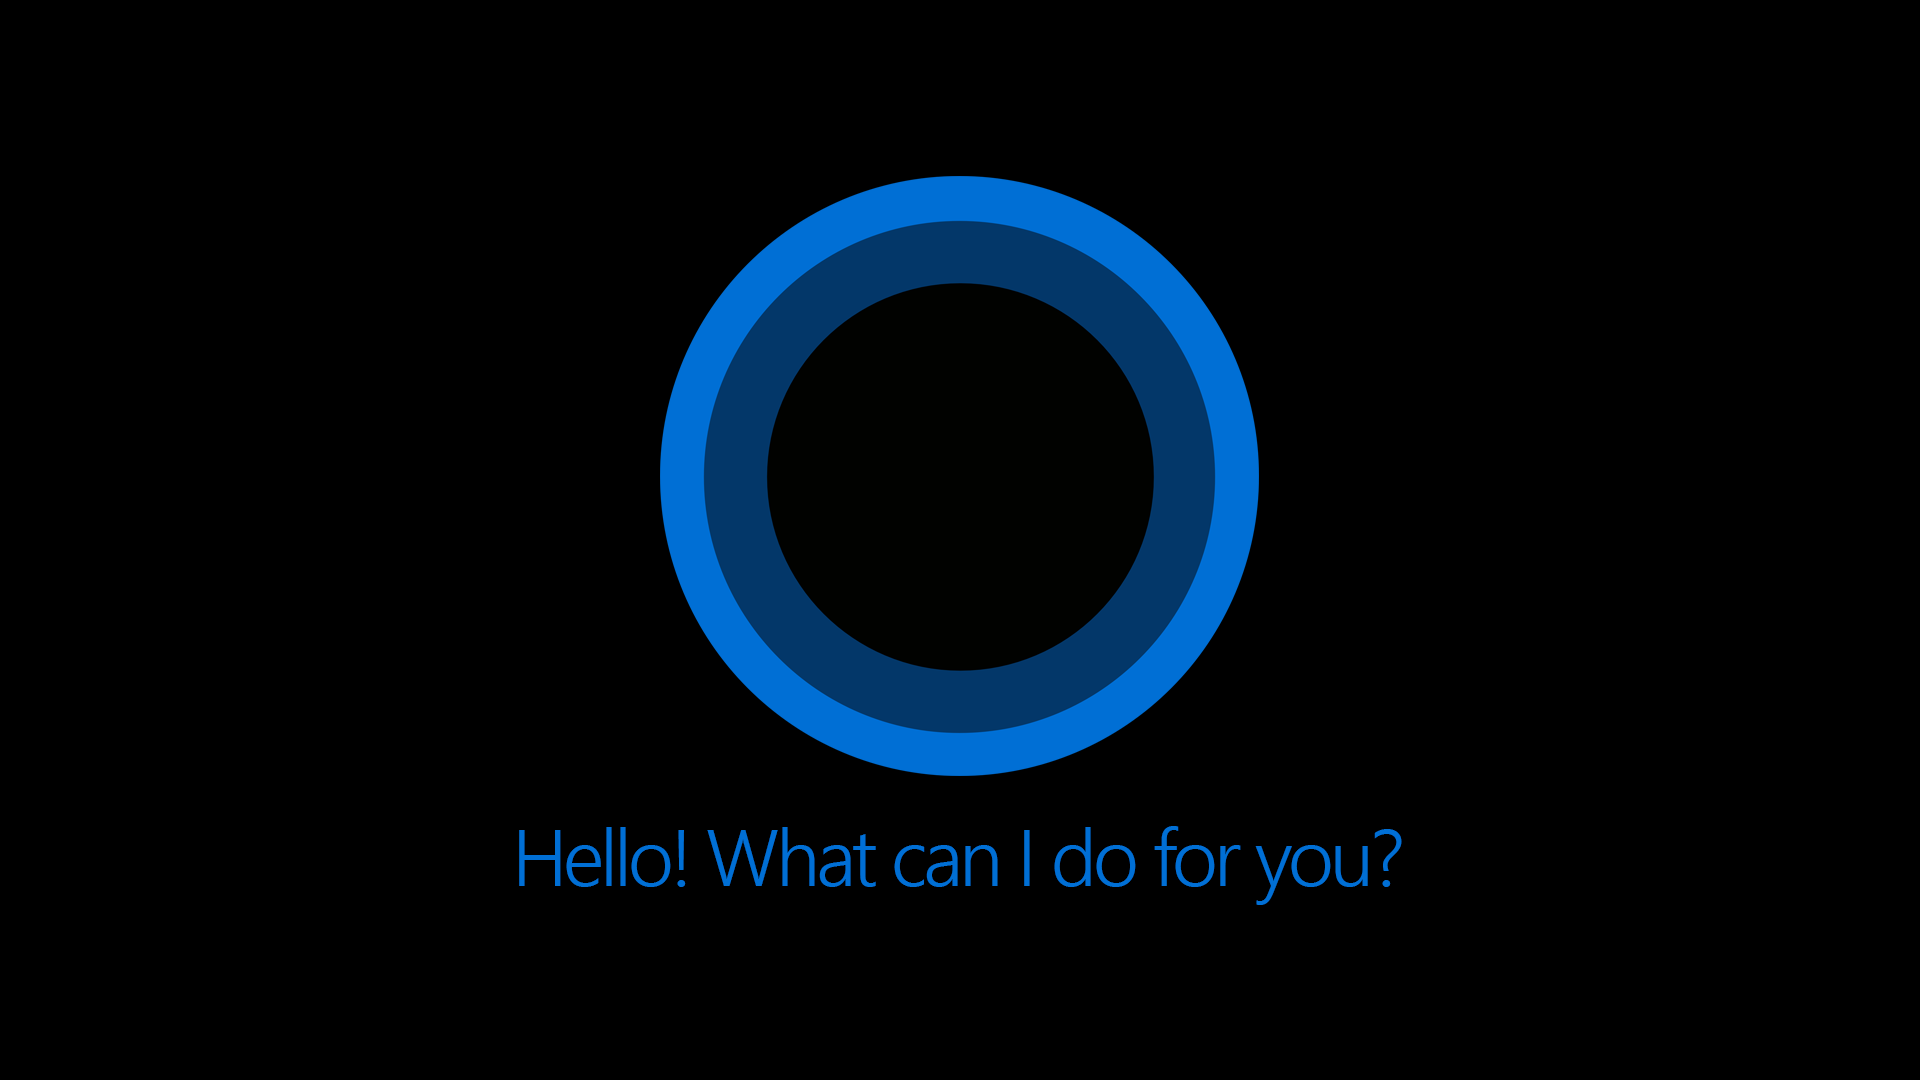 Η Microsoft εξαγόρασε την εταιρεία Semantic Machines για να βελτιώσει τις δυνατότητες συνομιλίας της Cortana